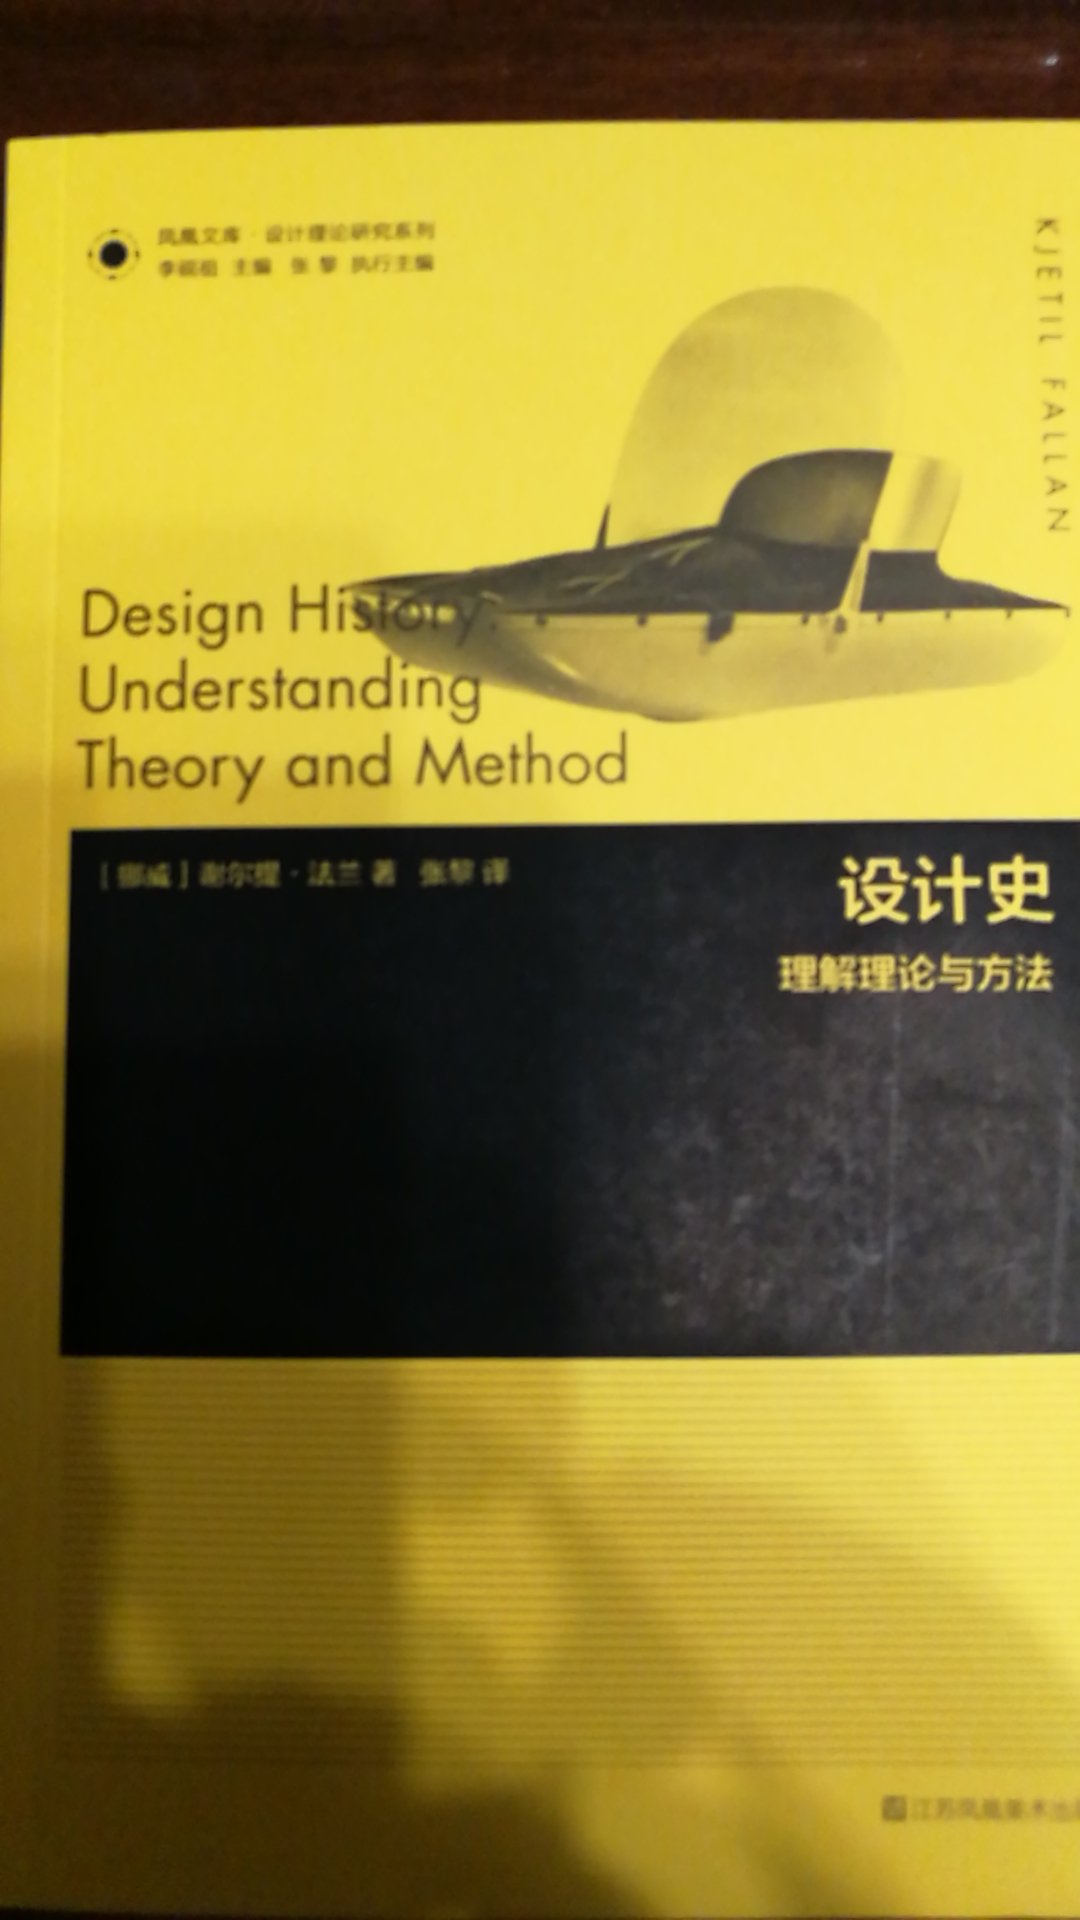 关于设计史研究认识论与方法论的理论著作。